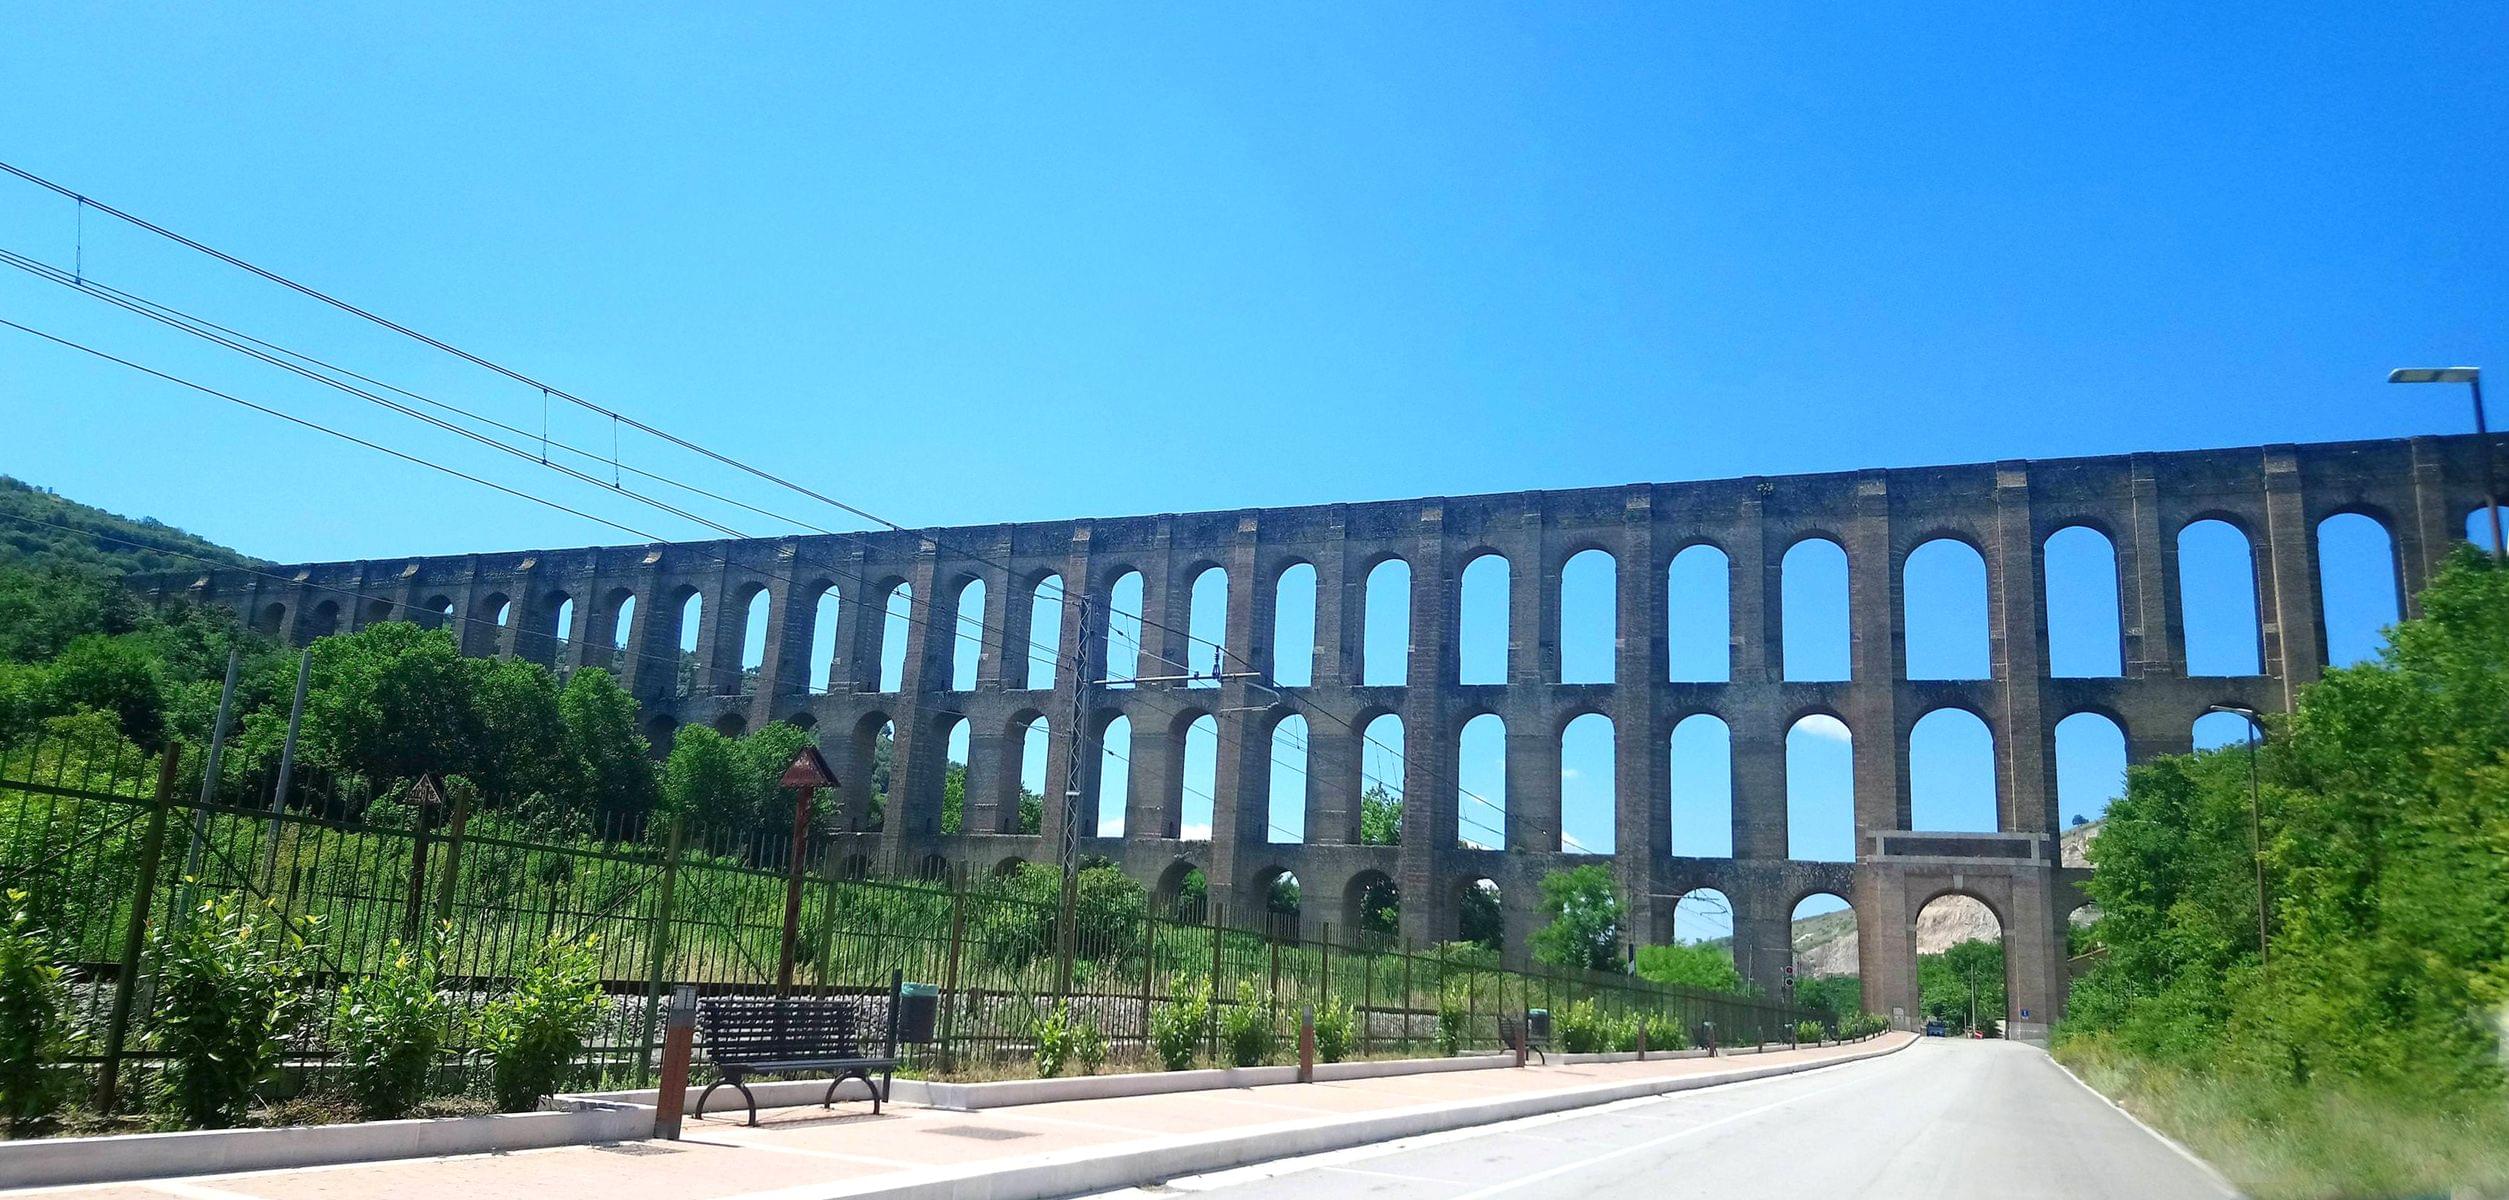 The Carolino Aqueduct